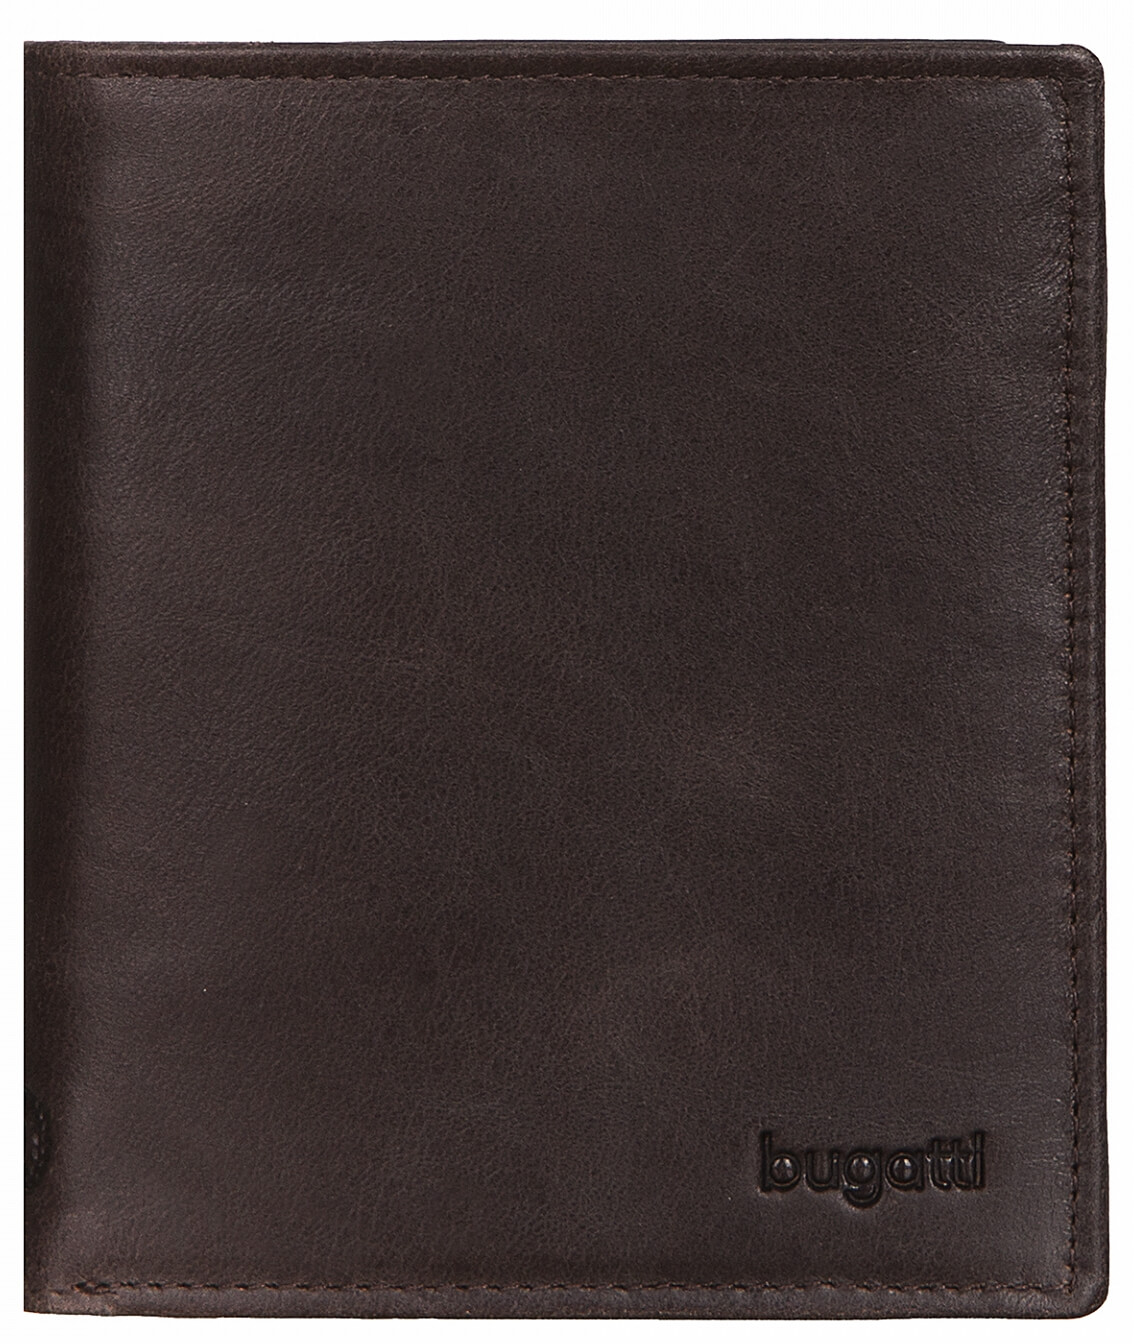 Bugatti Pánská kožená peněženka Volo 49218302